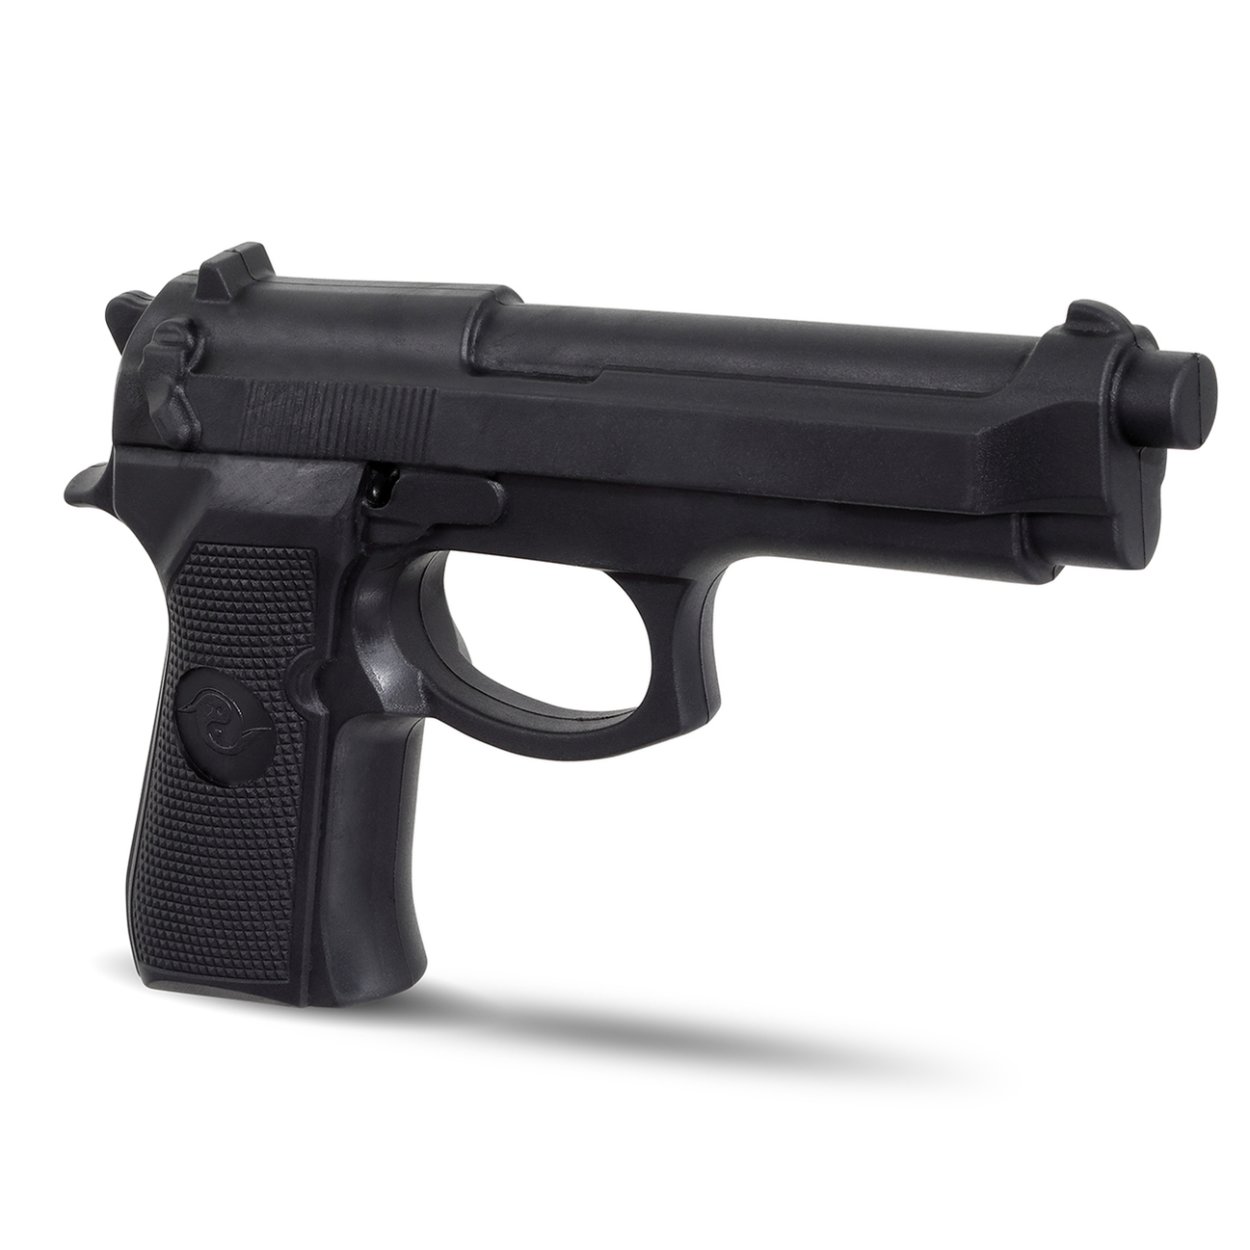 Realistic TP Rubber Hand Gun : Black - E416